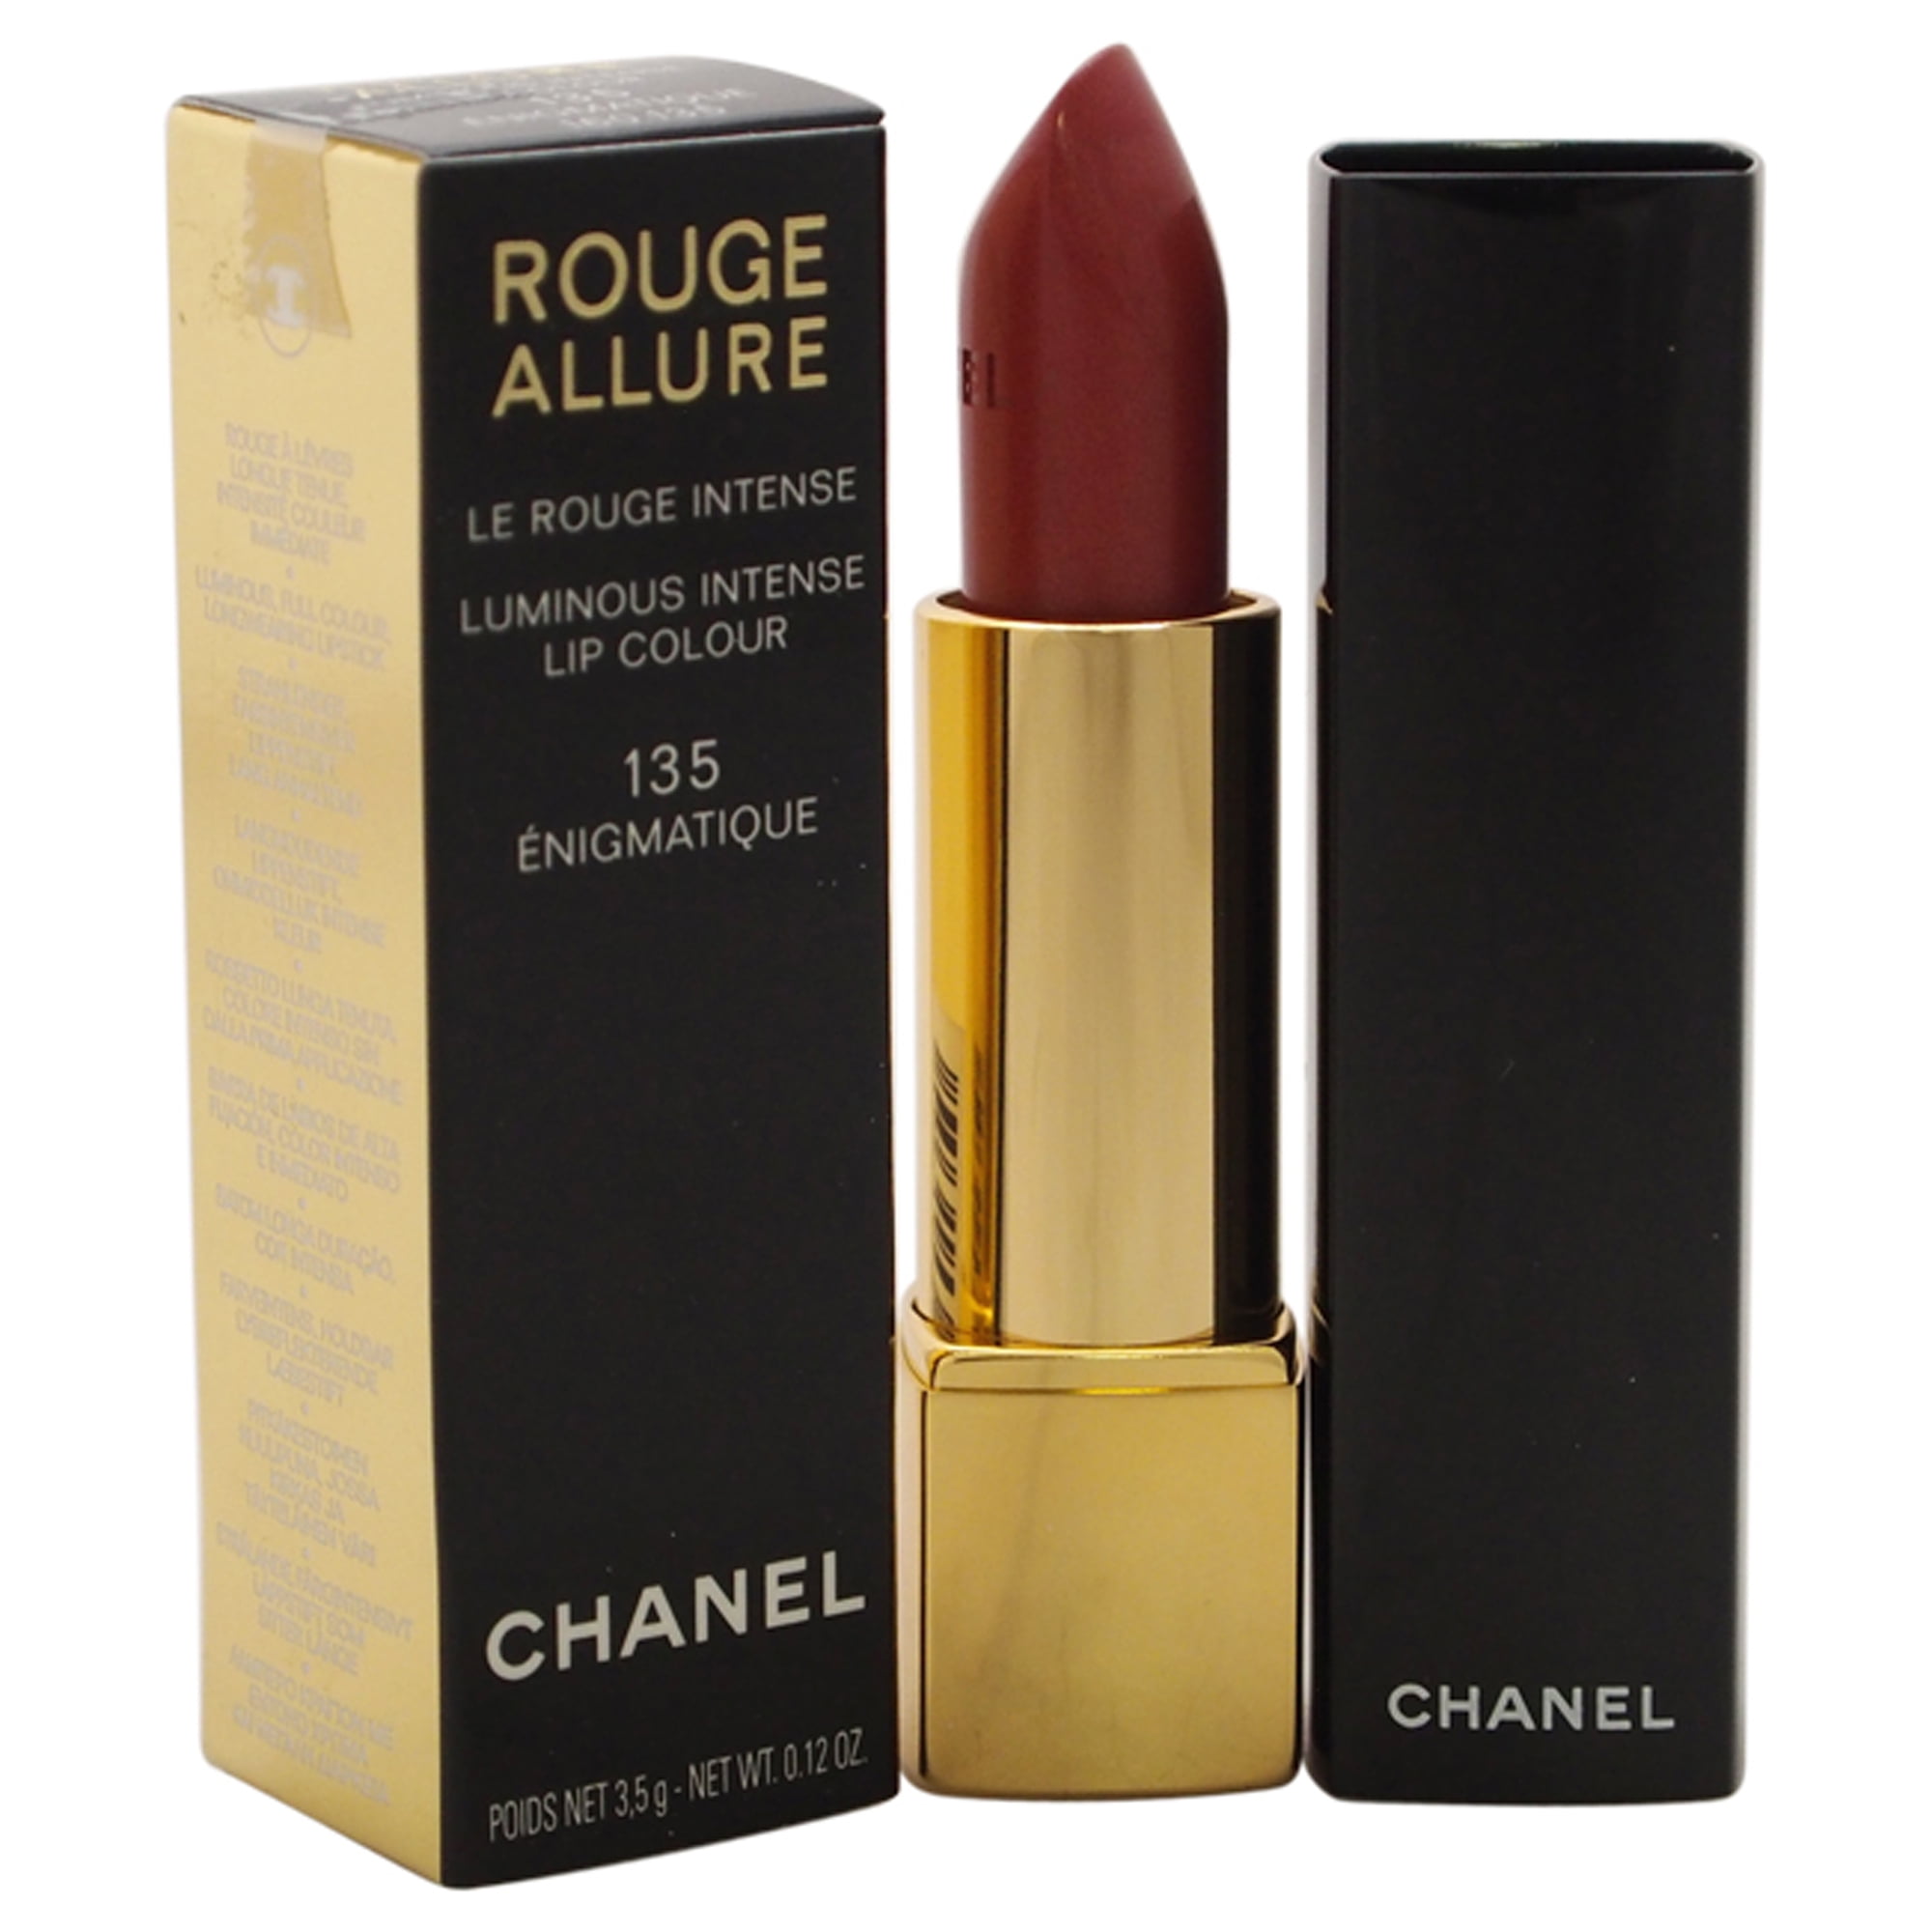 CHANEL Rouge Allure Enigmatique 135 - Reviews